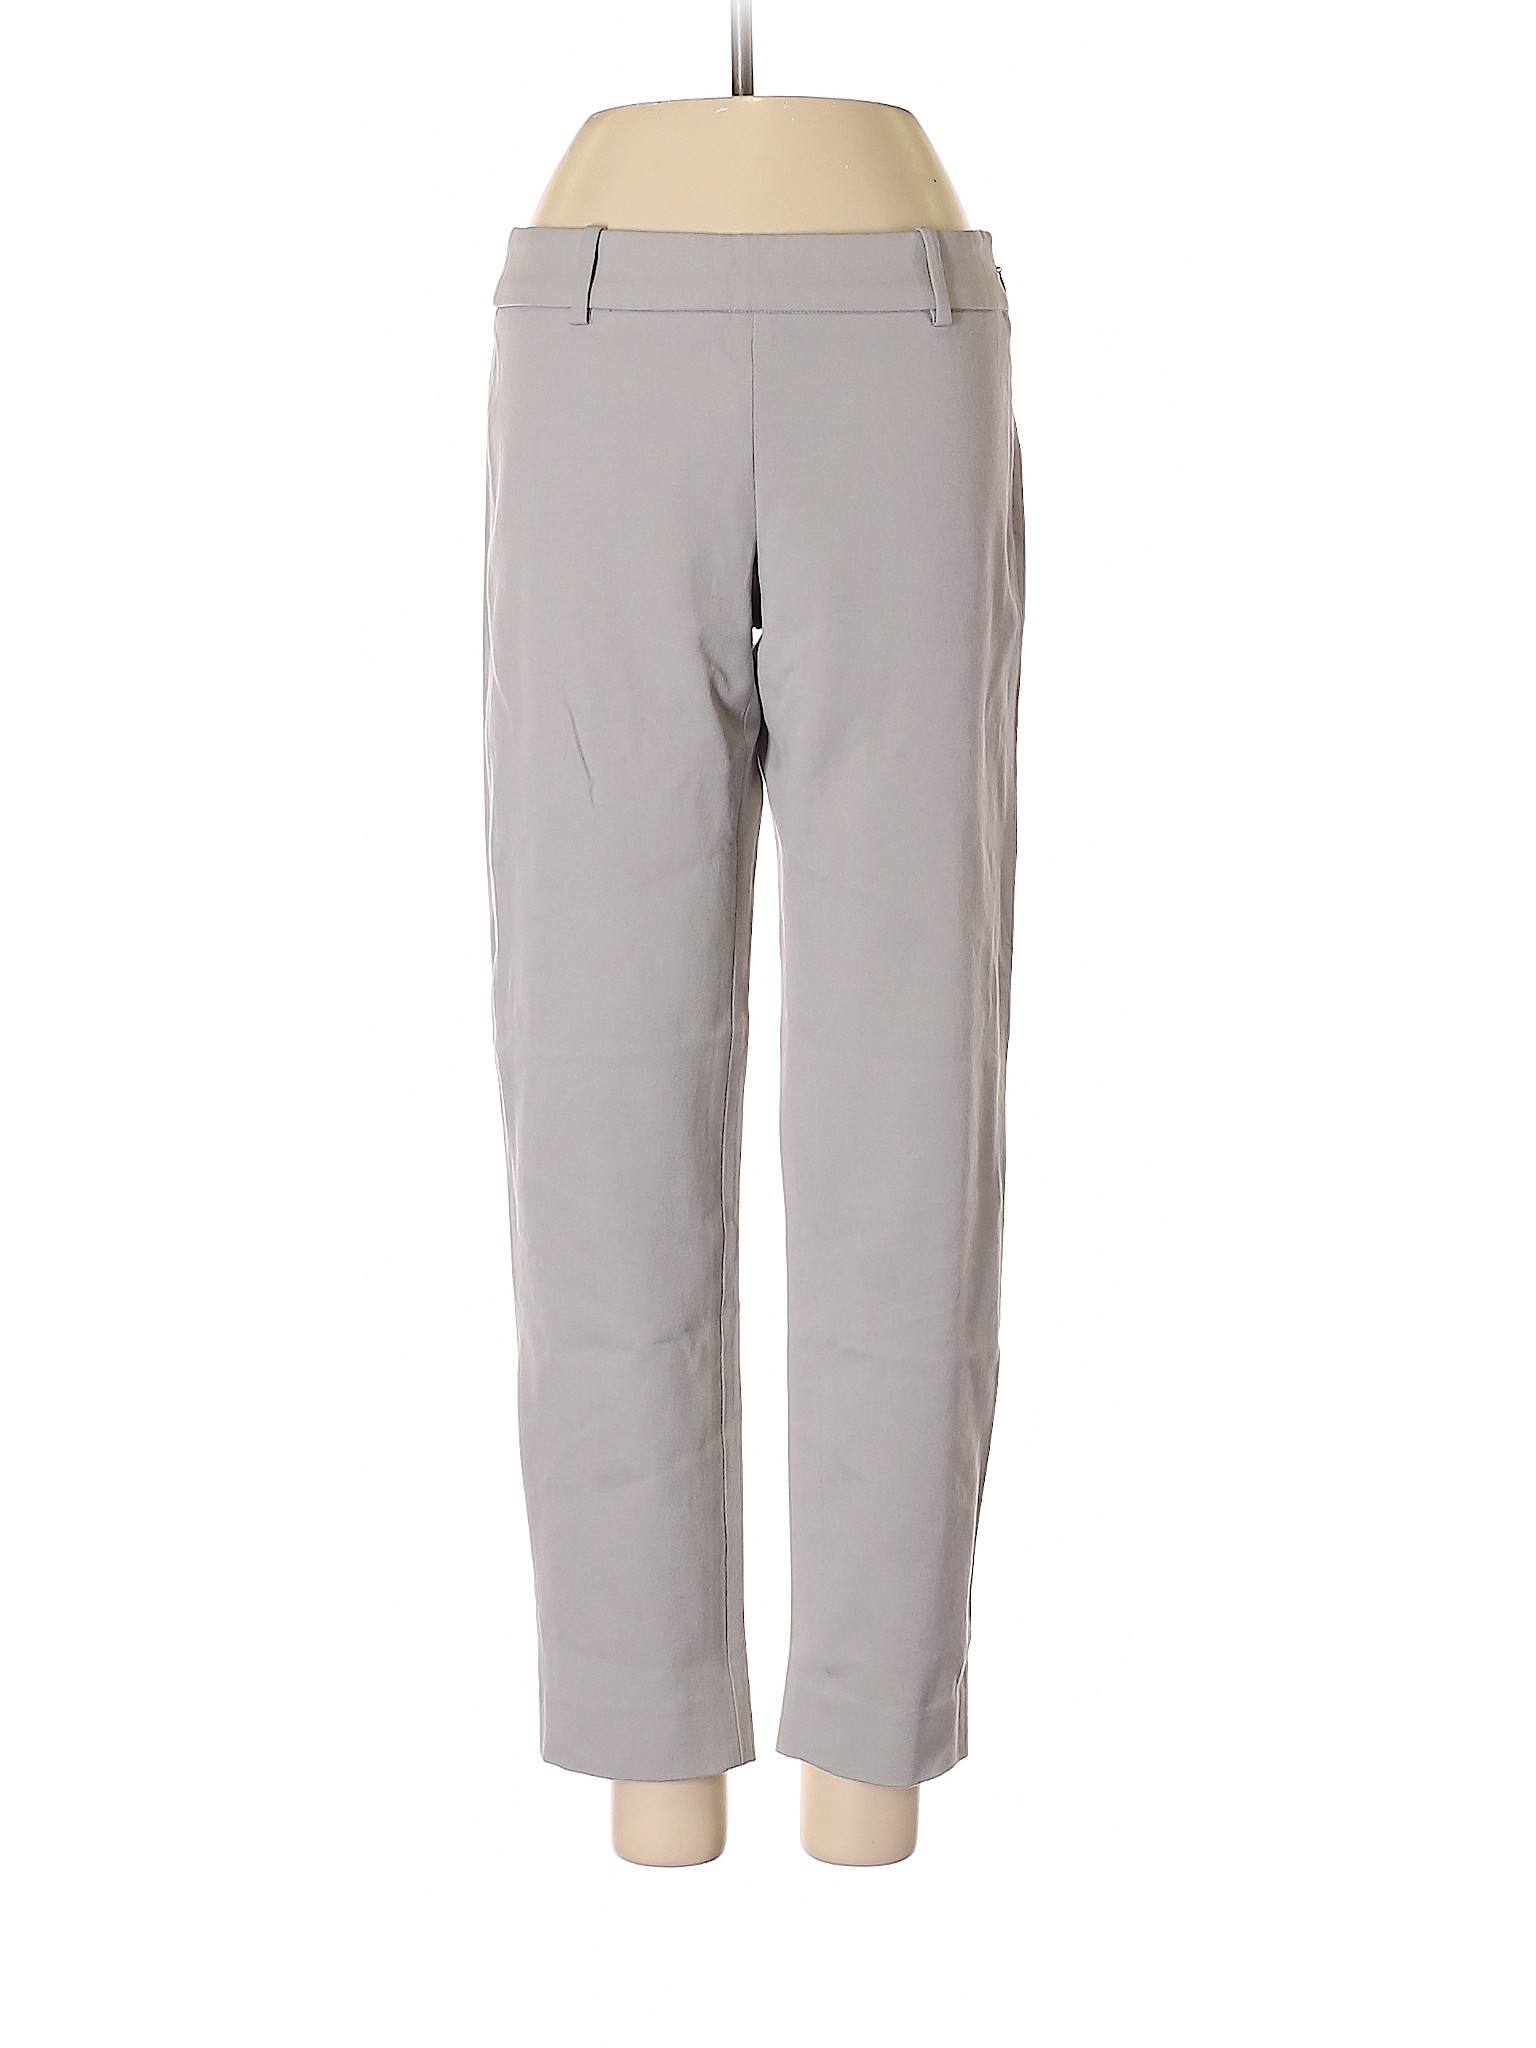 Cynthia Rowley TJX Women Gray Dress Pants 2 | eBay